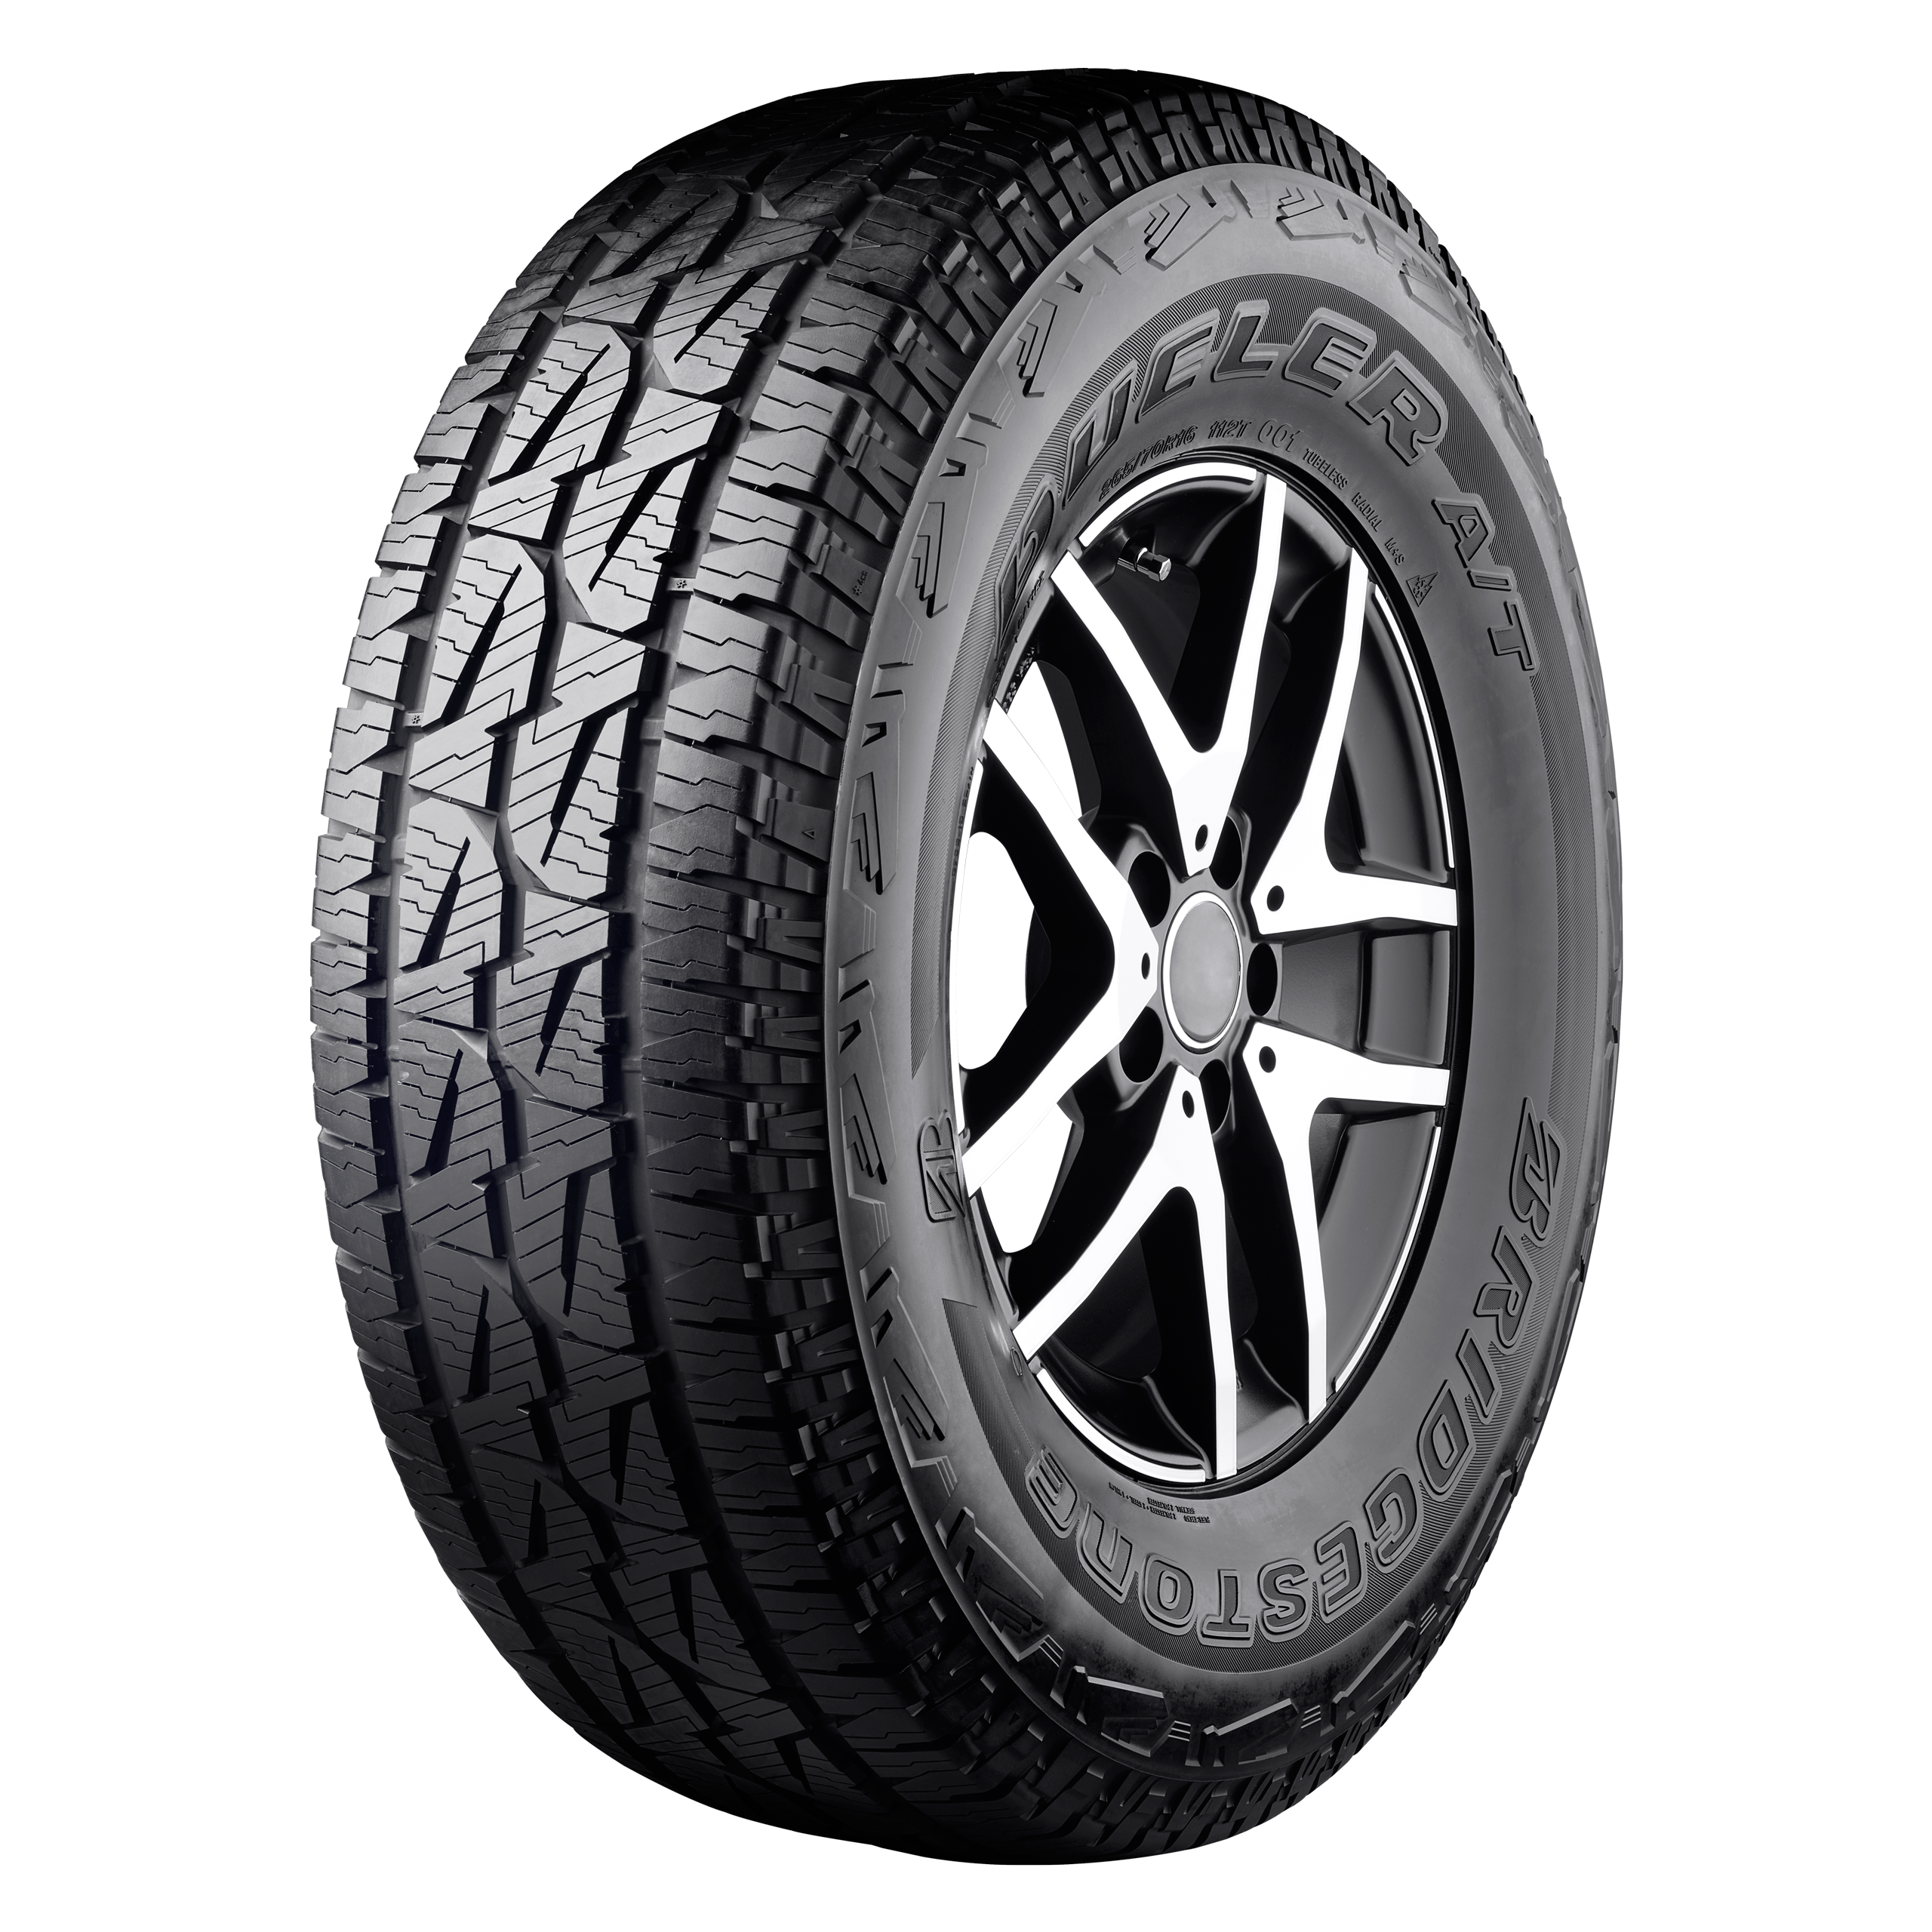 Bridgestone Dueler A/T 001 Test Offroad 4x4 SUV Reifen Profil Felge